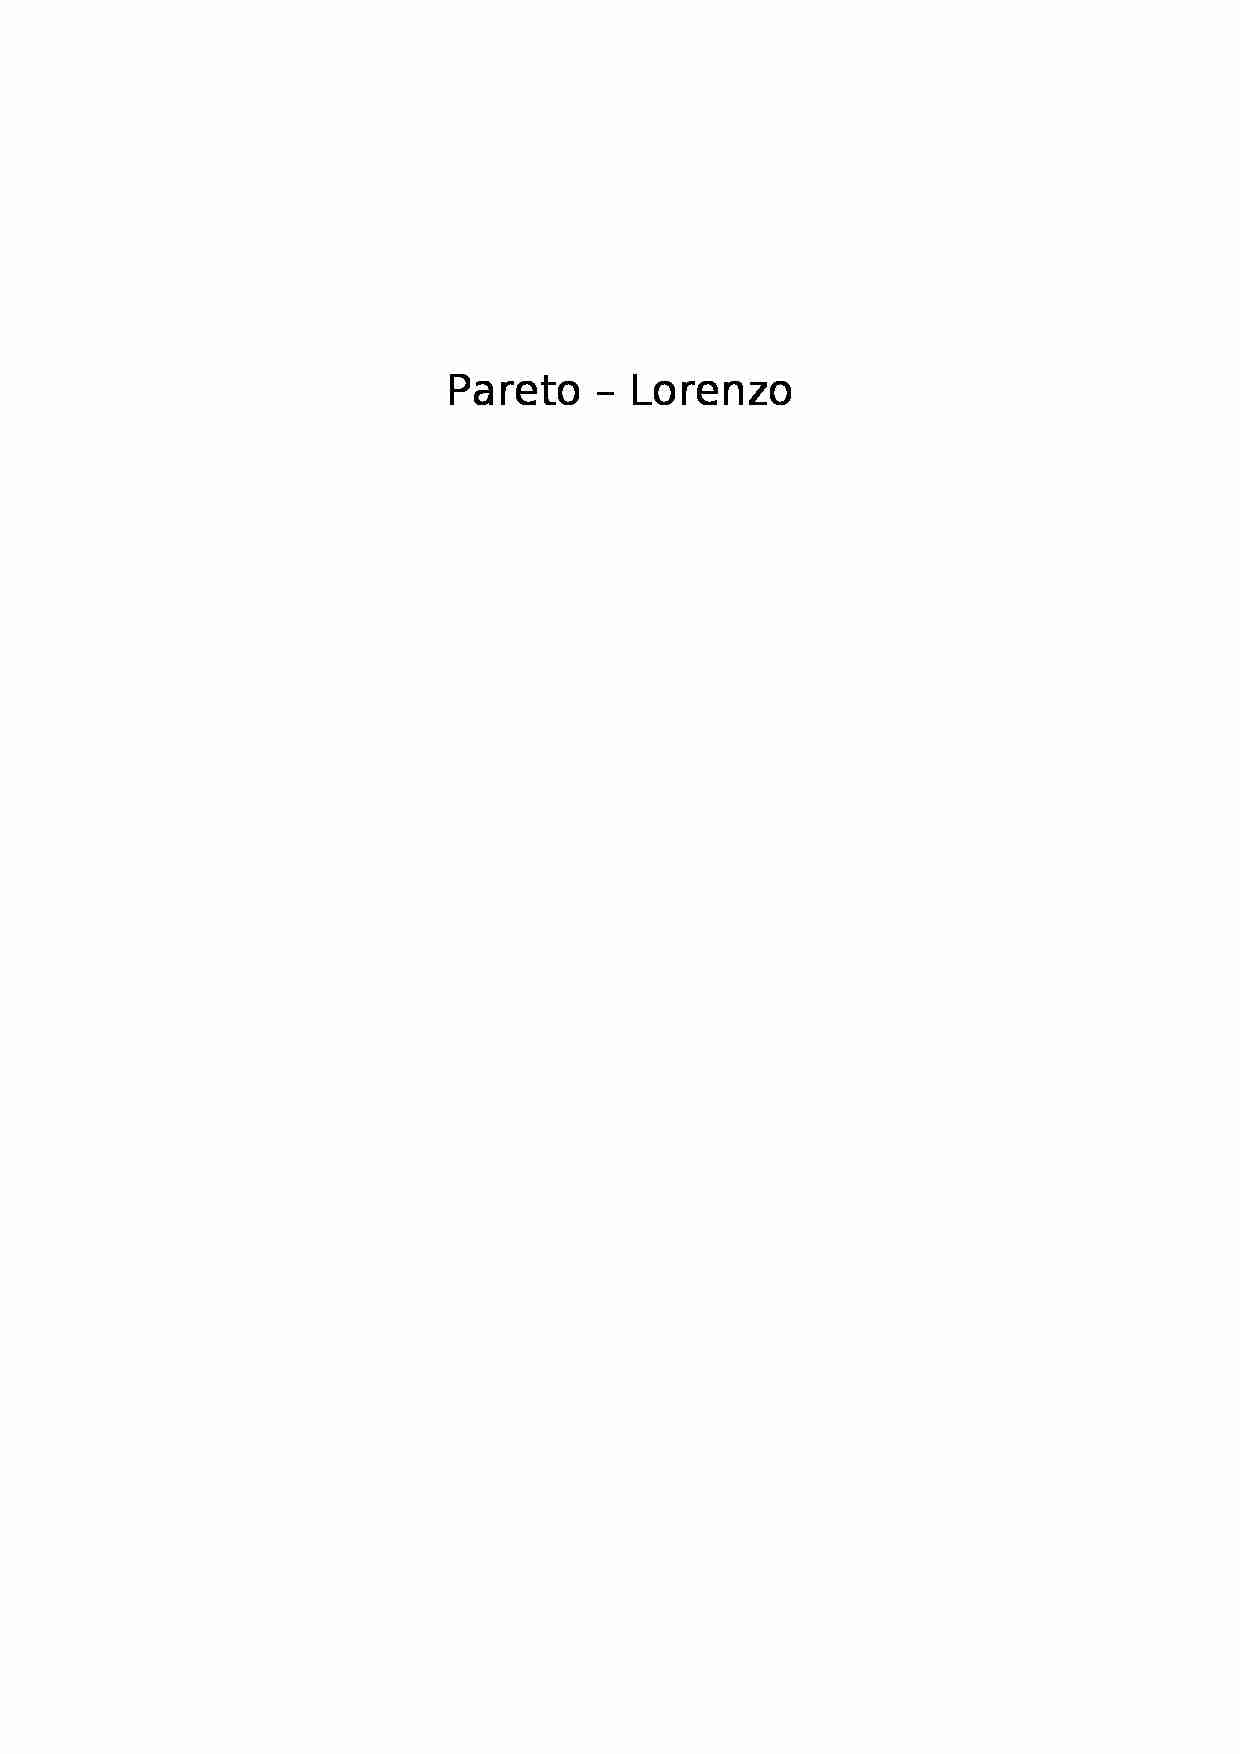 Zarządzanie - Pareto - Lorenzo - strona 1